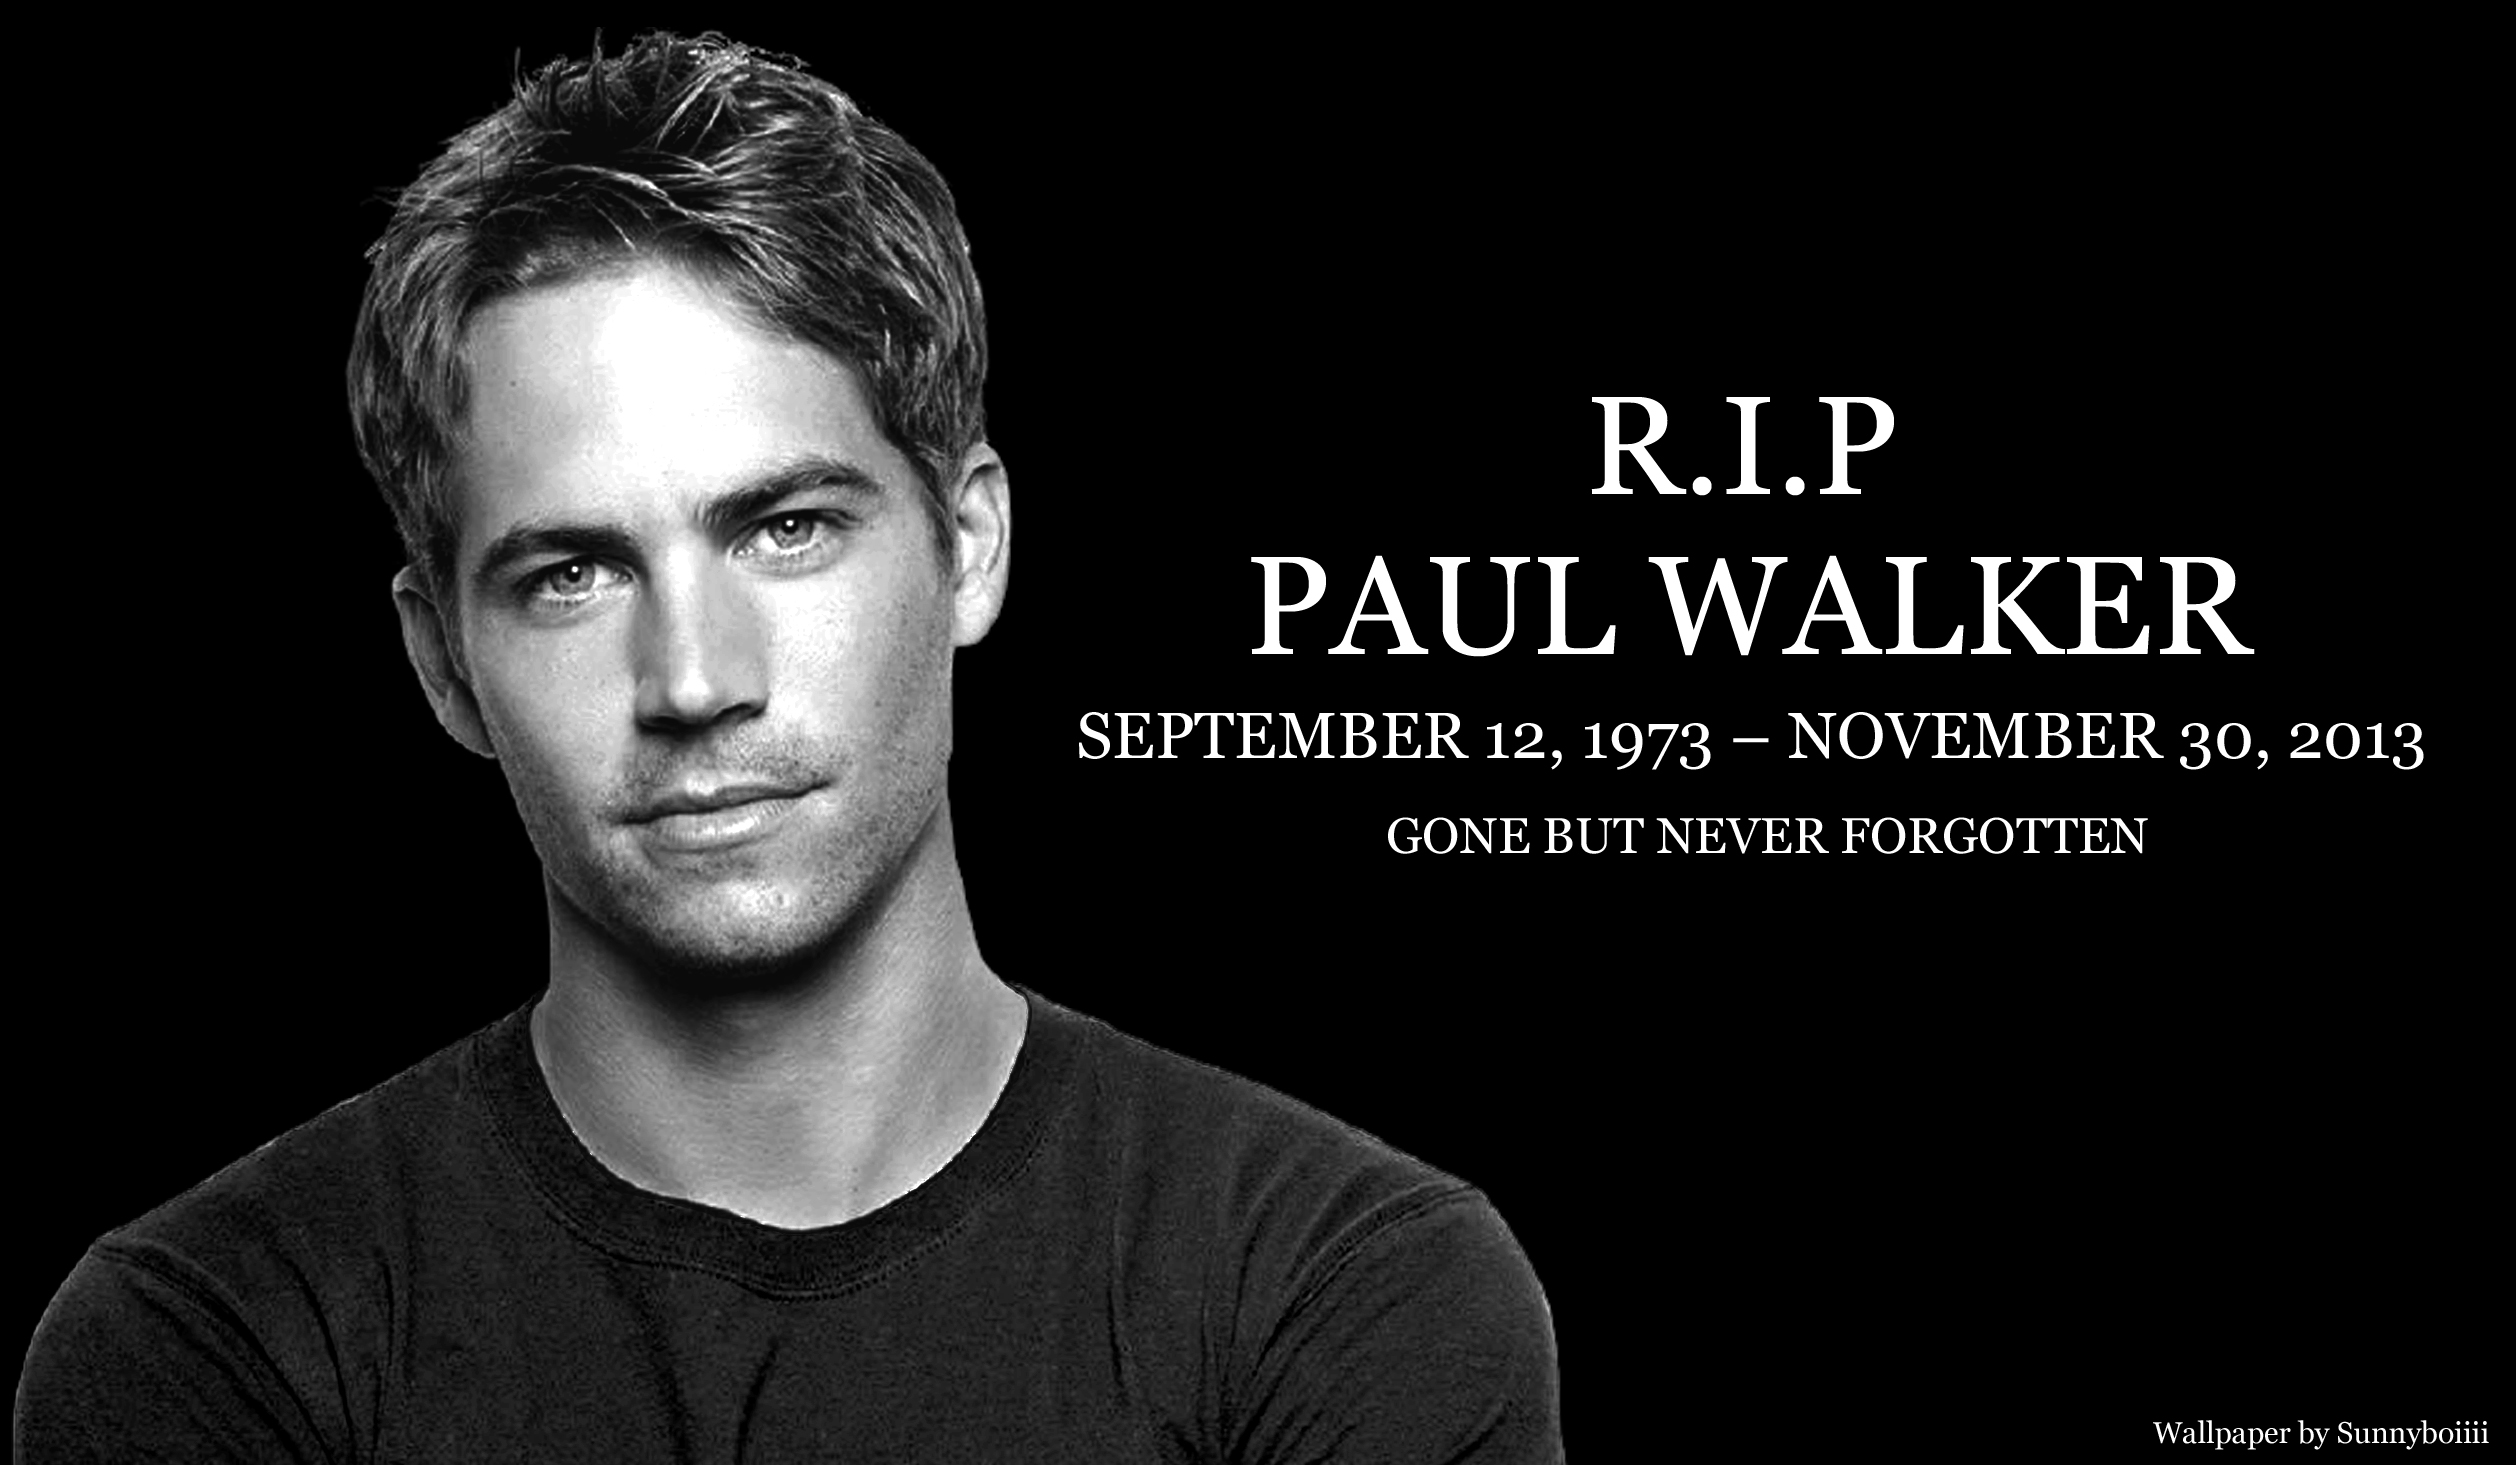 Video Tribute Mengharukan Dari Fast And Furious Untuk Paul Walker